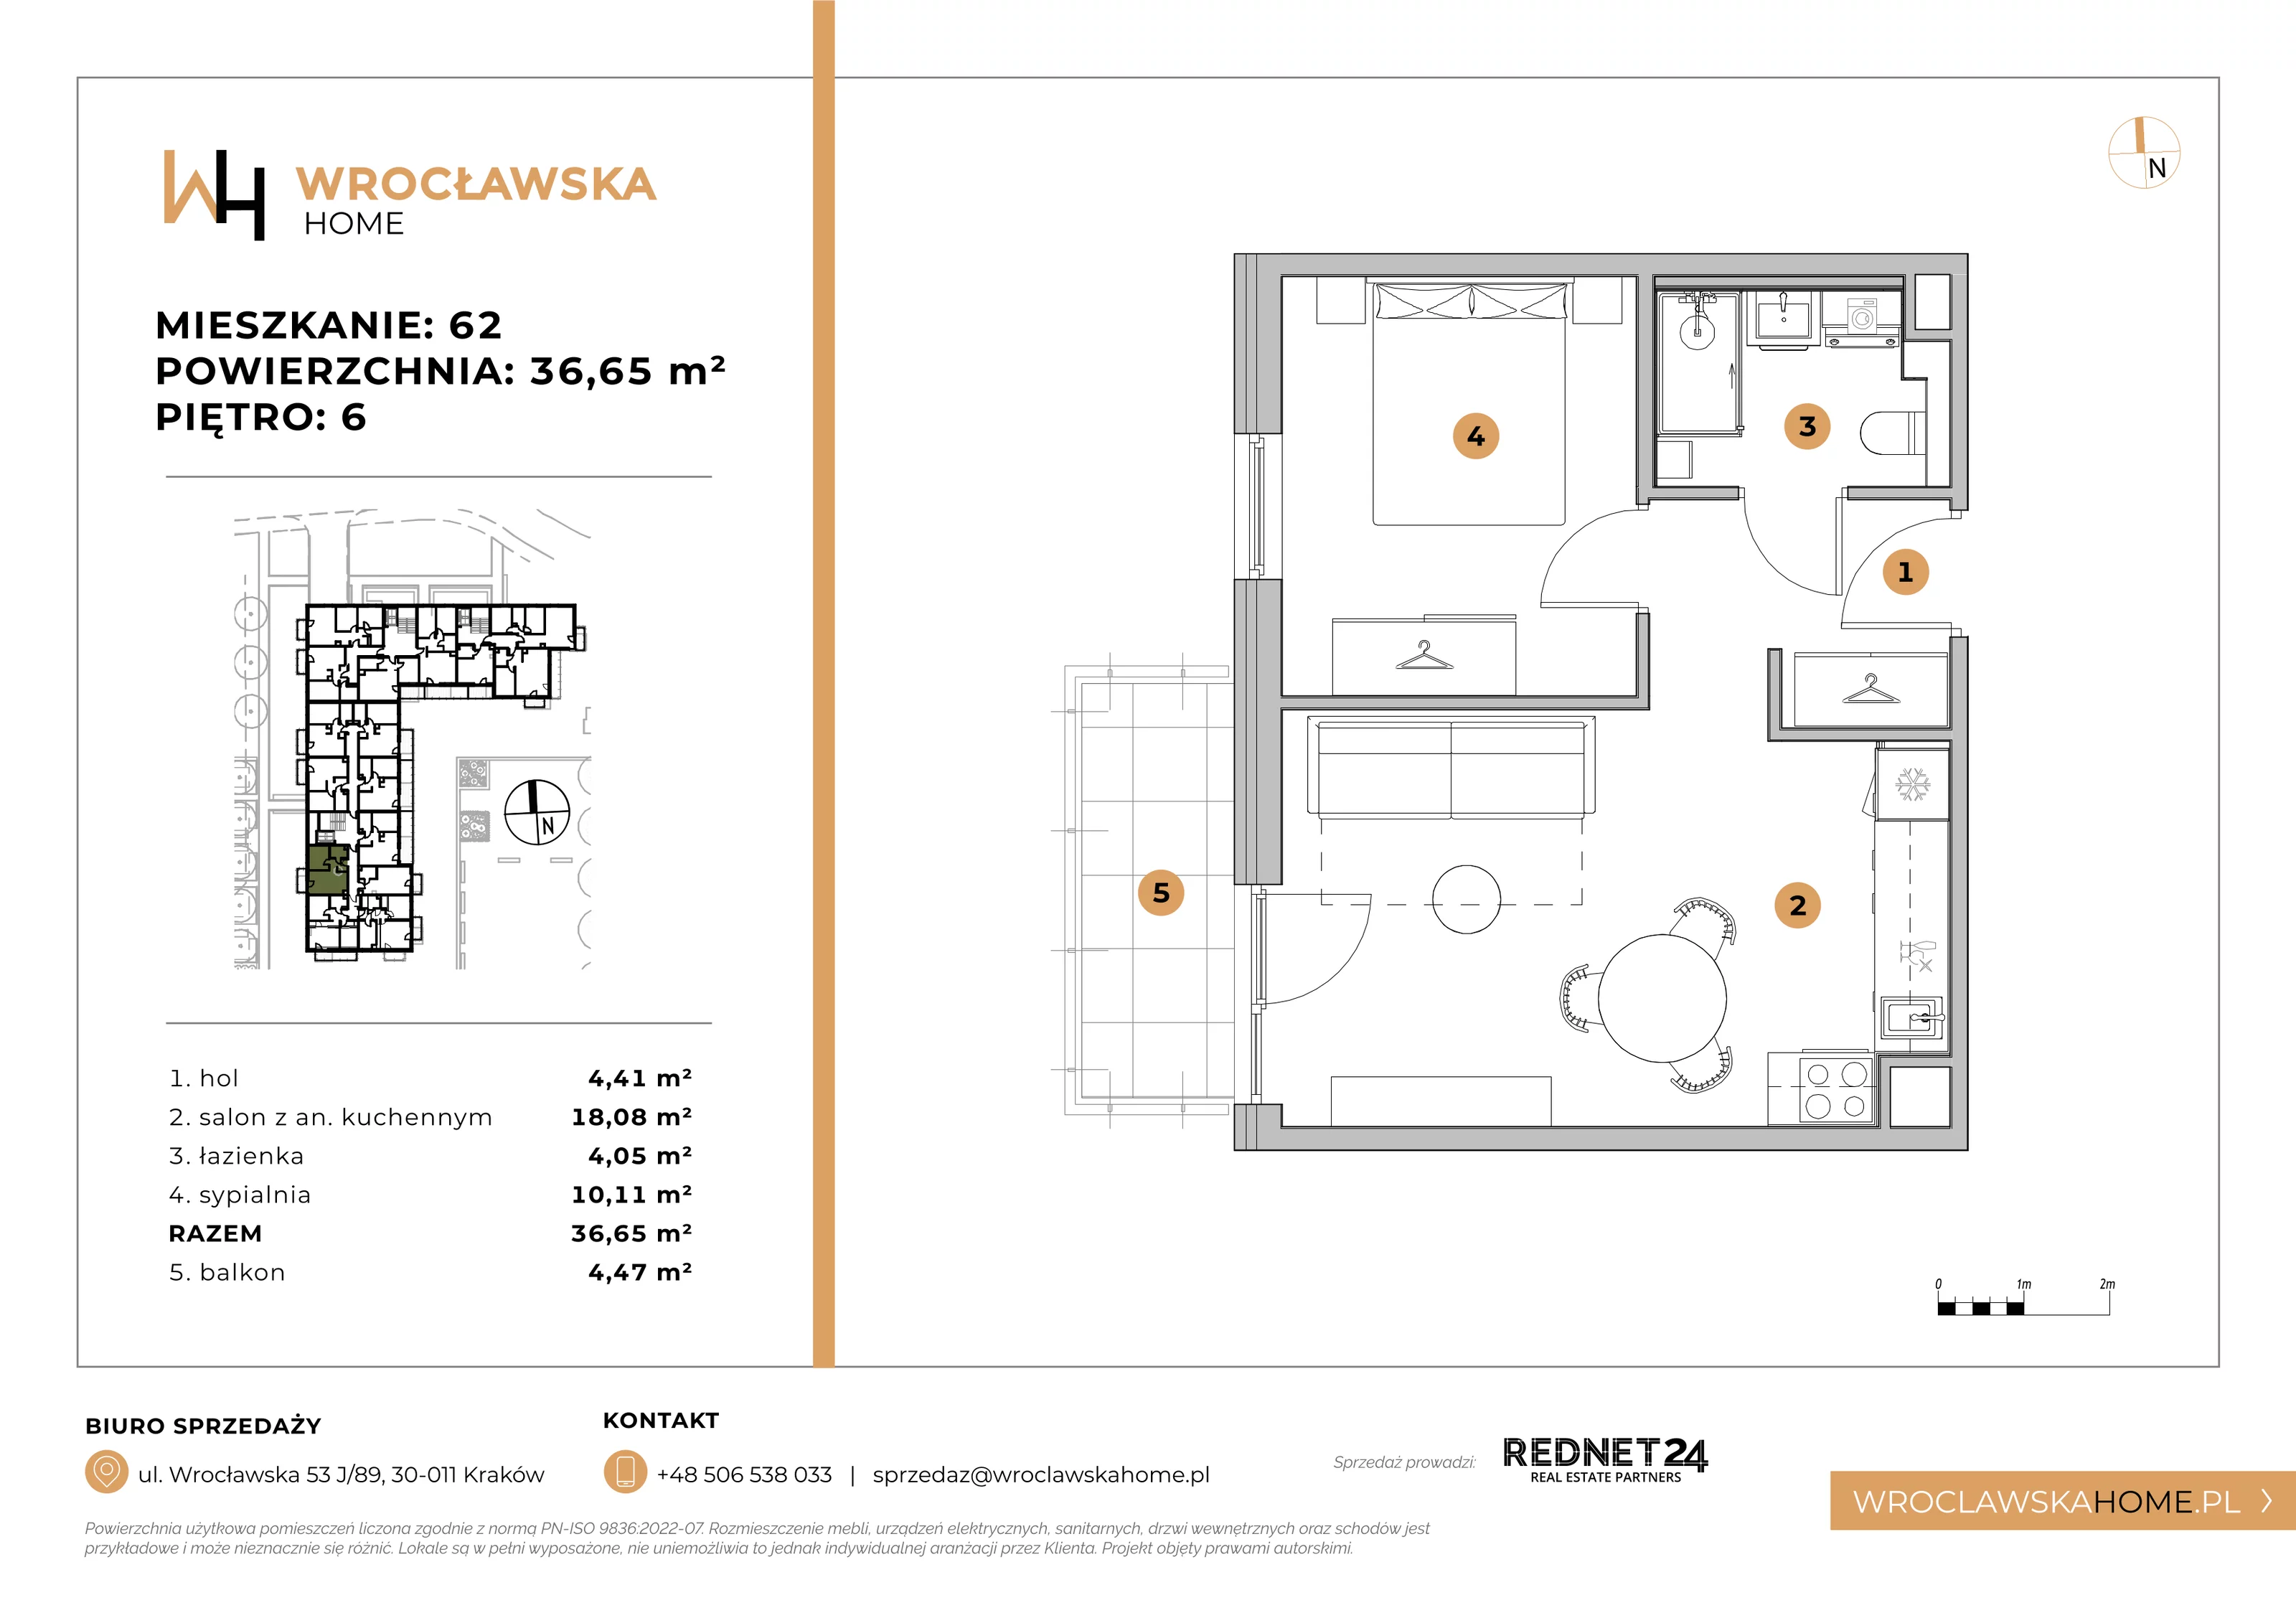 Mieszkanie 36,65 m², piętro 6, oferta nr 62, Wrocławska HOME, Kraków, Krowodrza, ul. Wrocławska 53J	